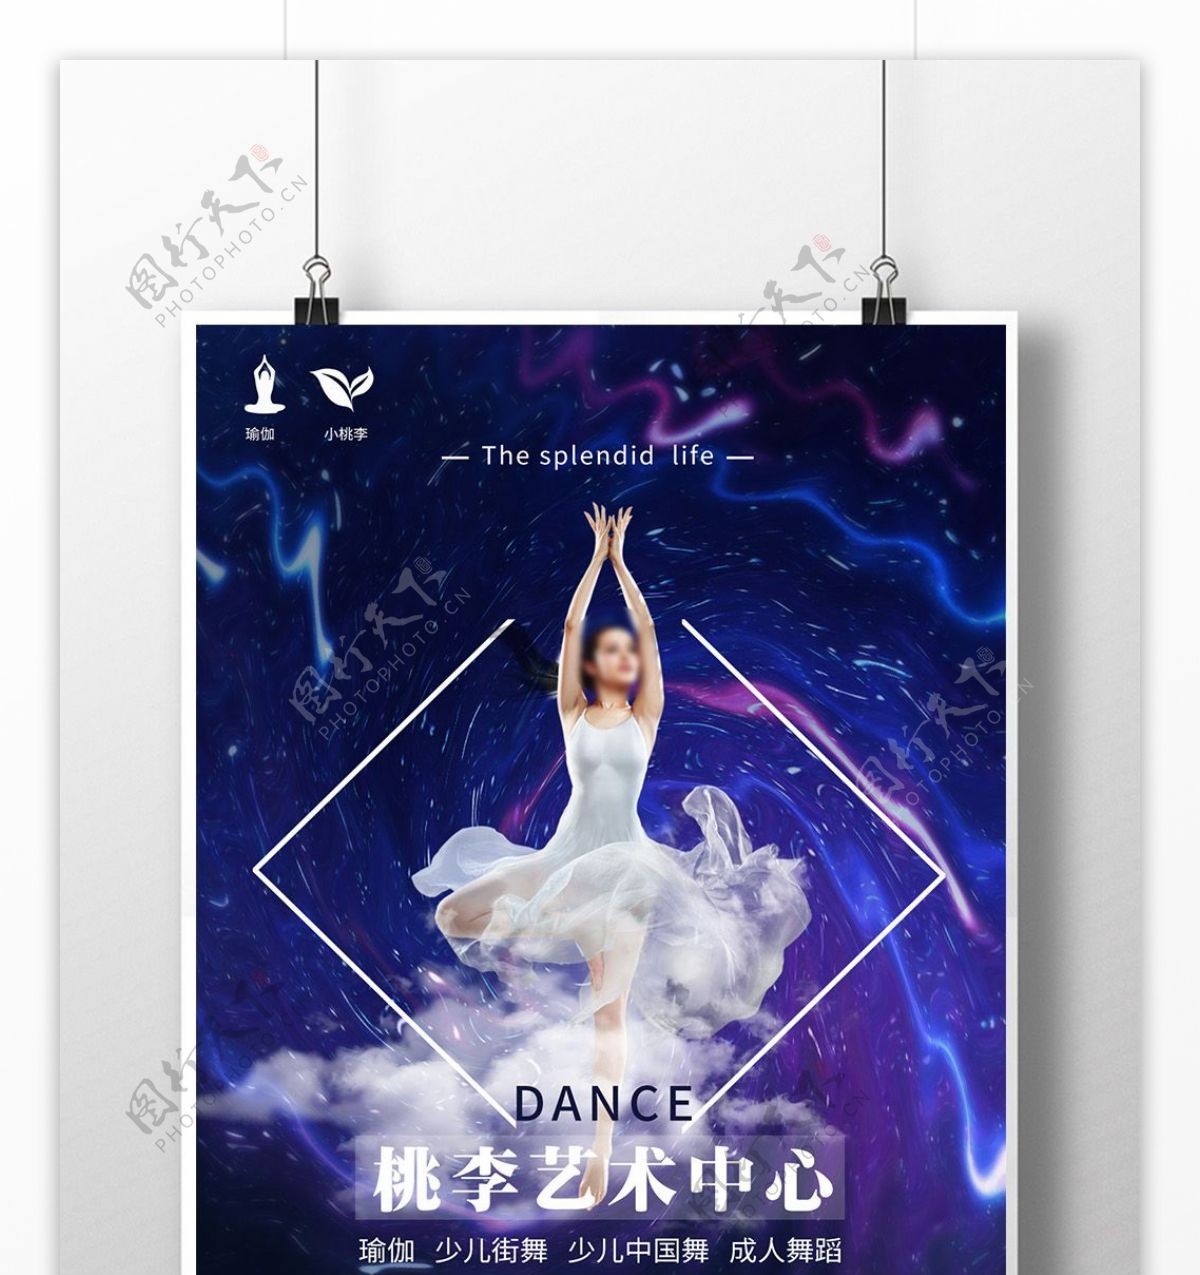 舞蹈街舞成人舞蹈少儿中国舞海报艺术中心